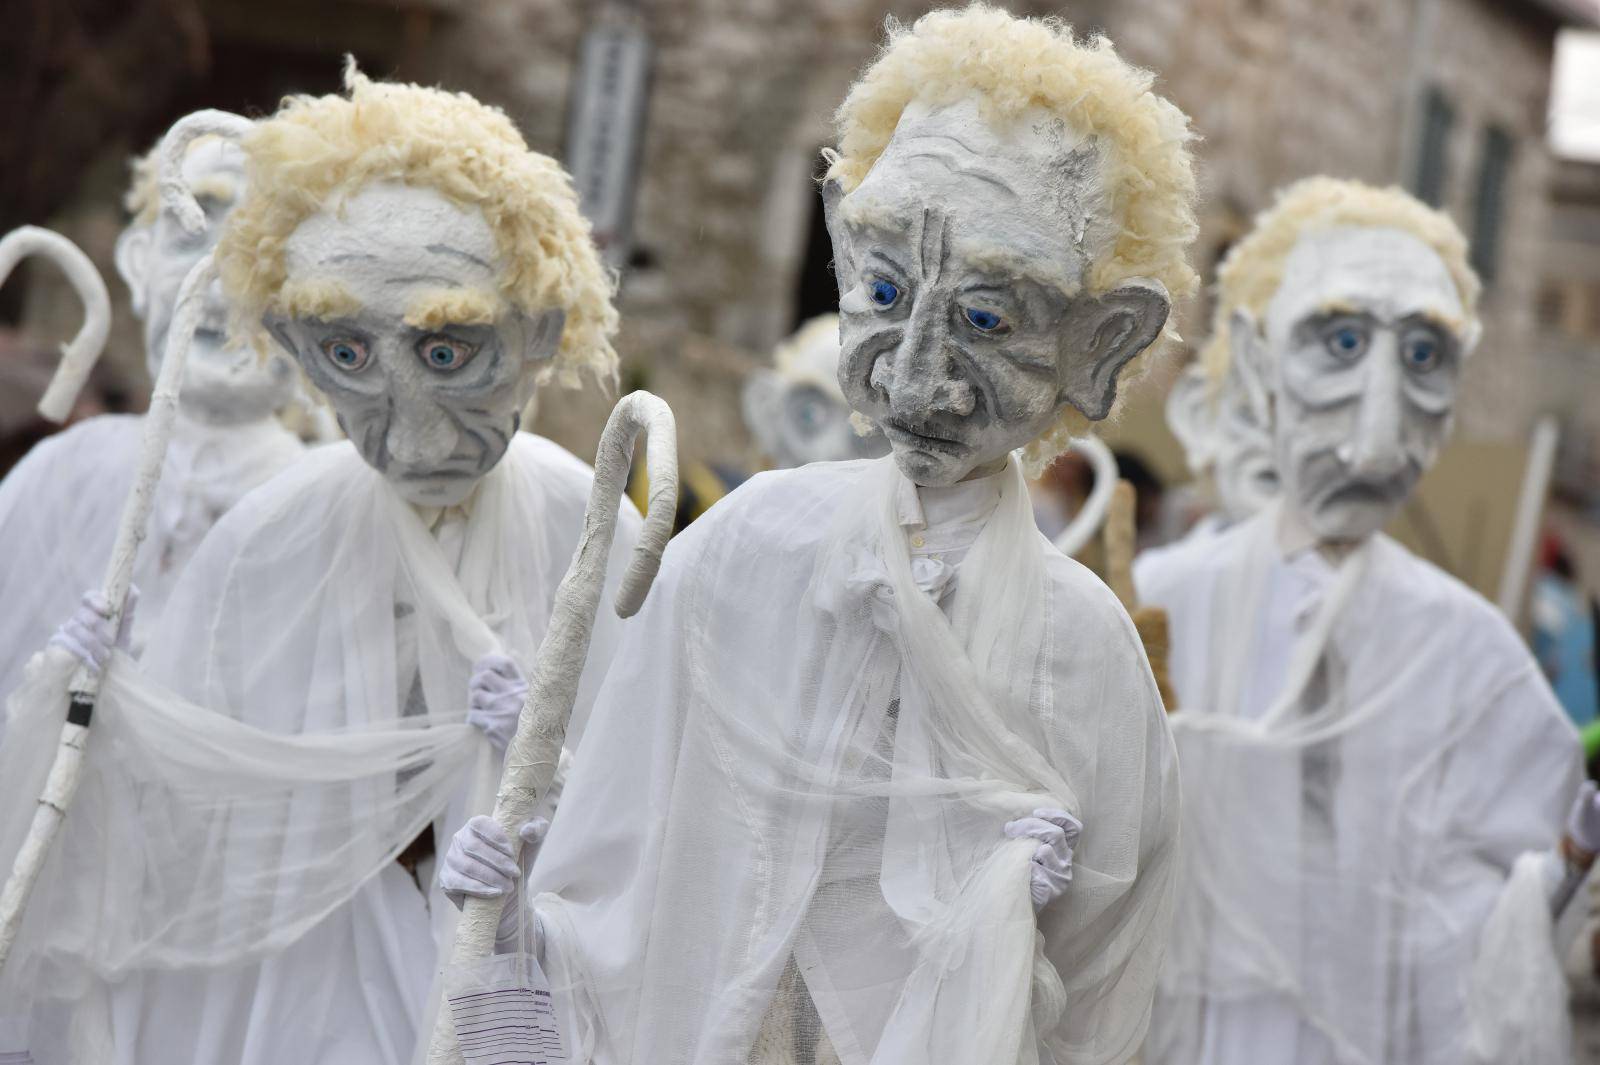 Murterske bake - povorka koja oduÅ¡evljava posjetitelje originalnim maskama i zabavom